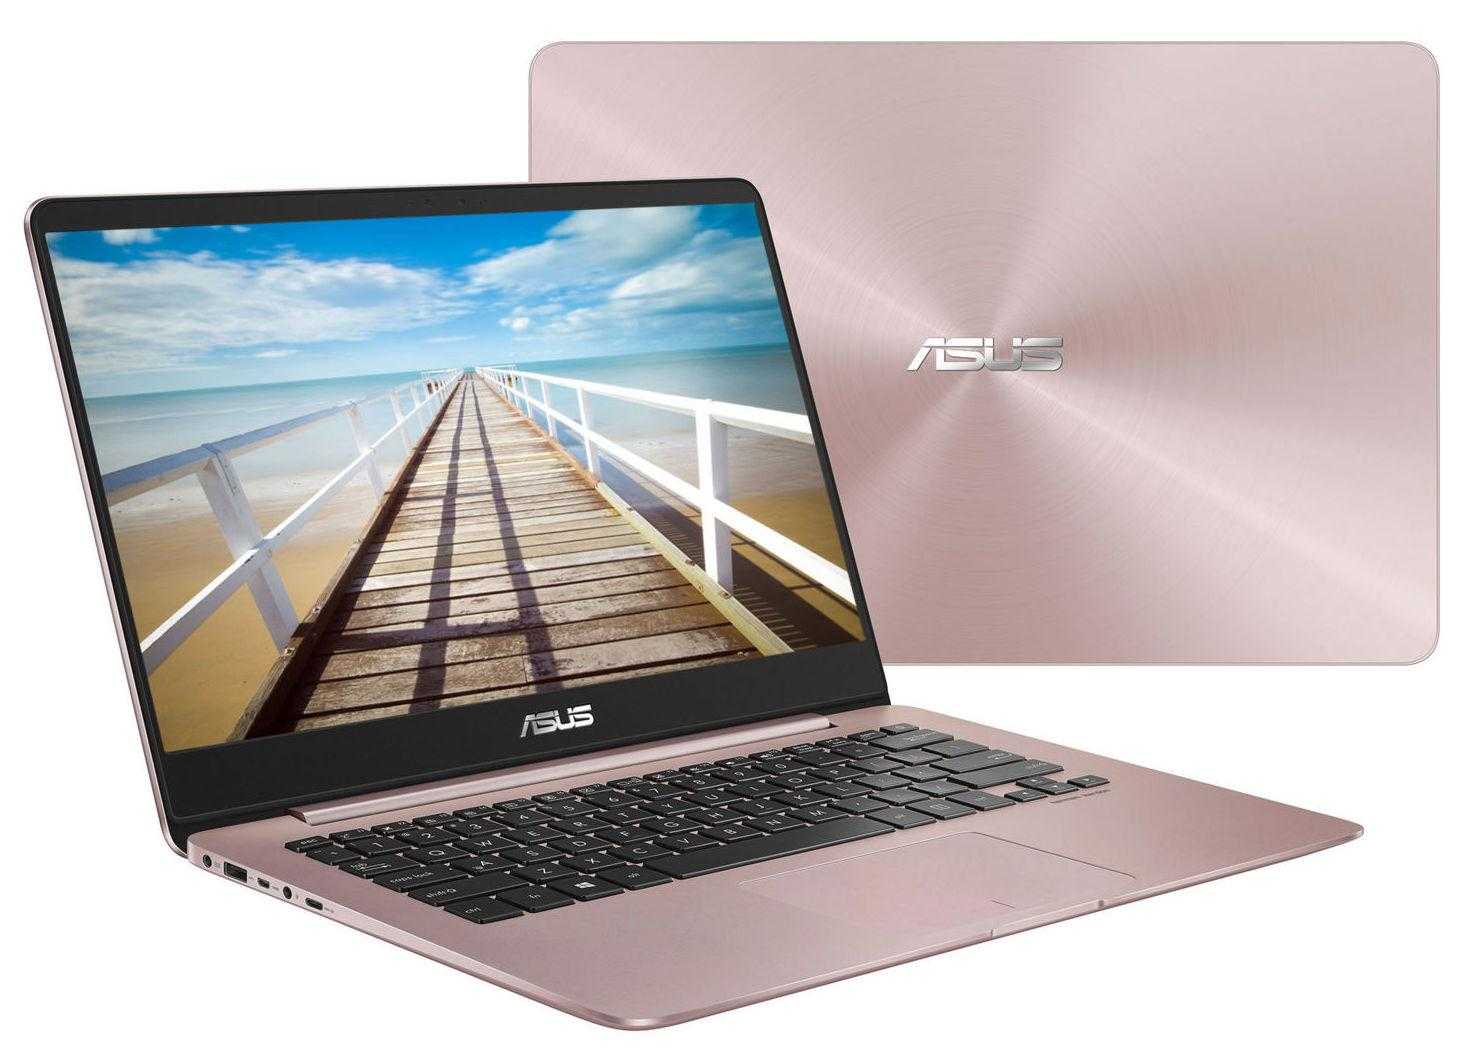 Ноутбук Asus ZenBook UX430UN Rose Gold (UX430UN-GV046T) - подробные характеристики обзоры видео фото Цены в интернет-магазинах где можно купить ноутбук Asus ZenBook UX430UN Rose Gold (UX430UN-GV046T)